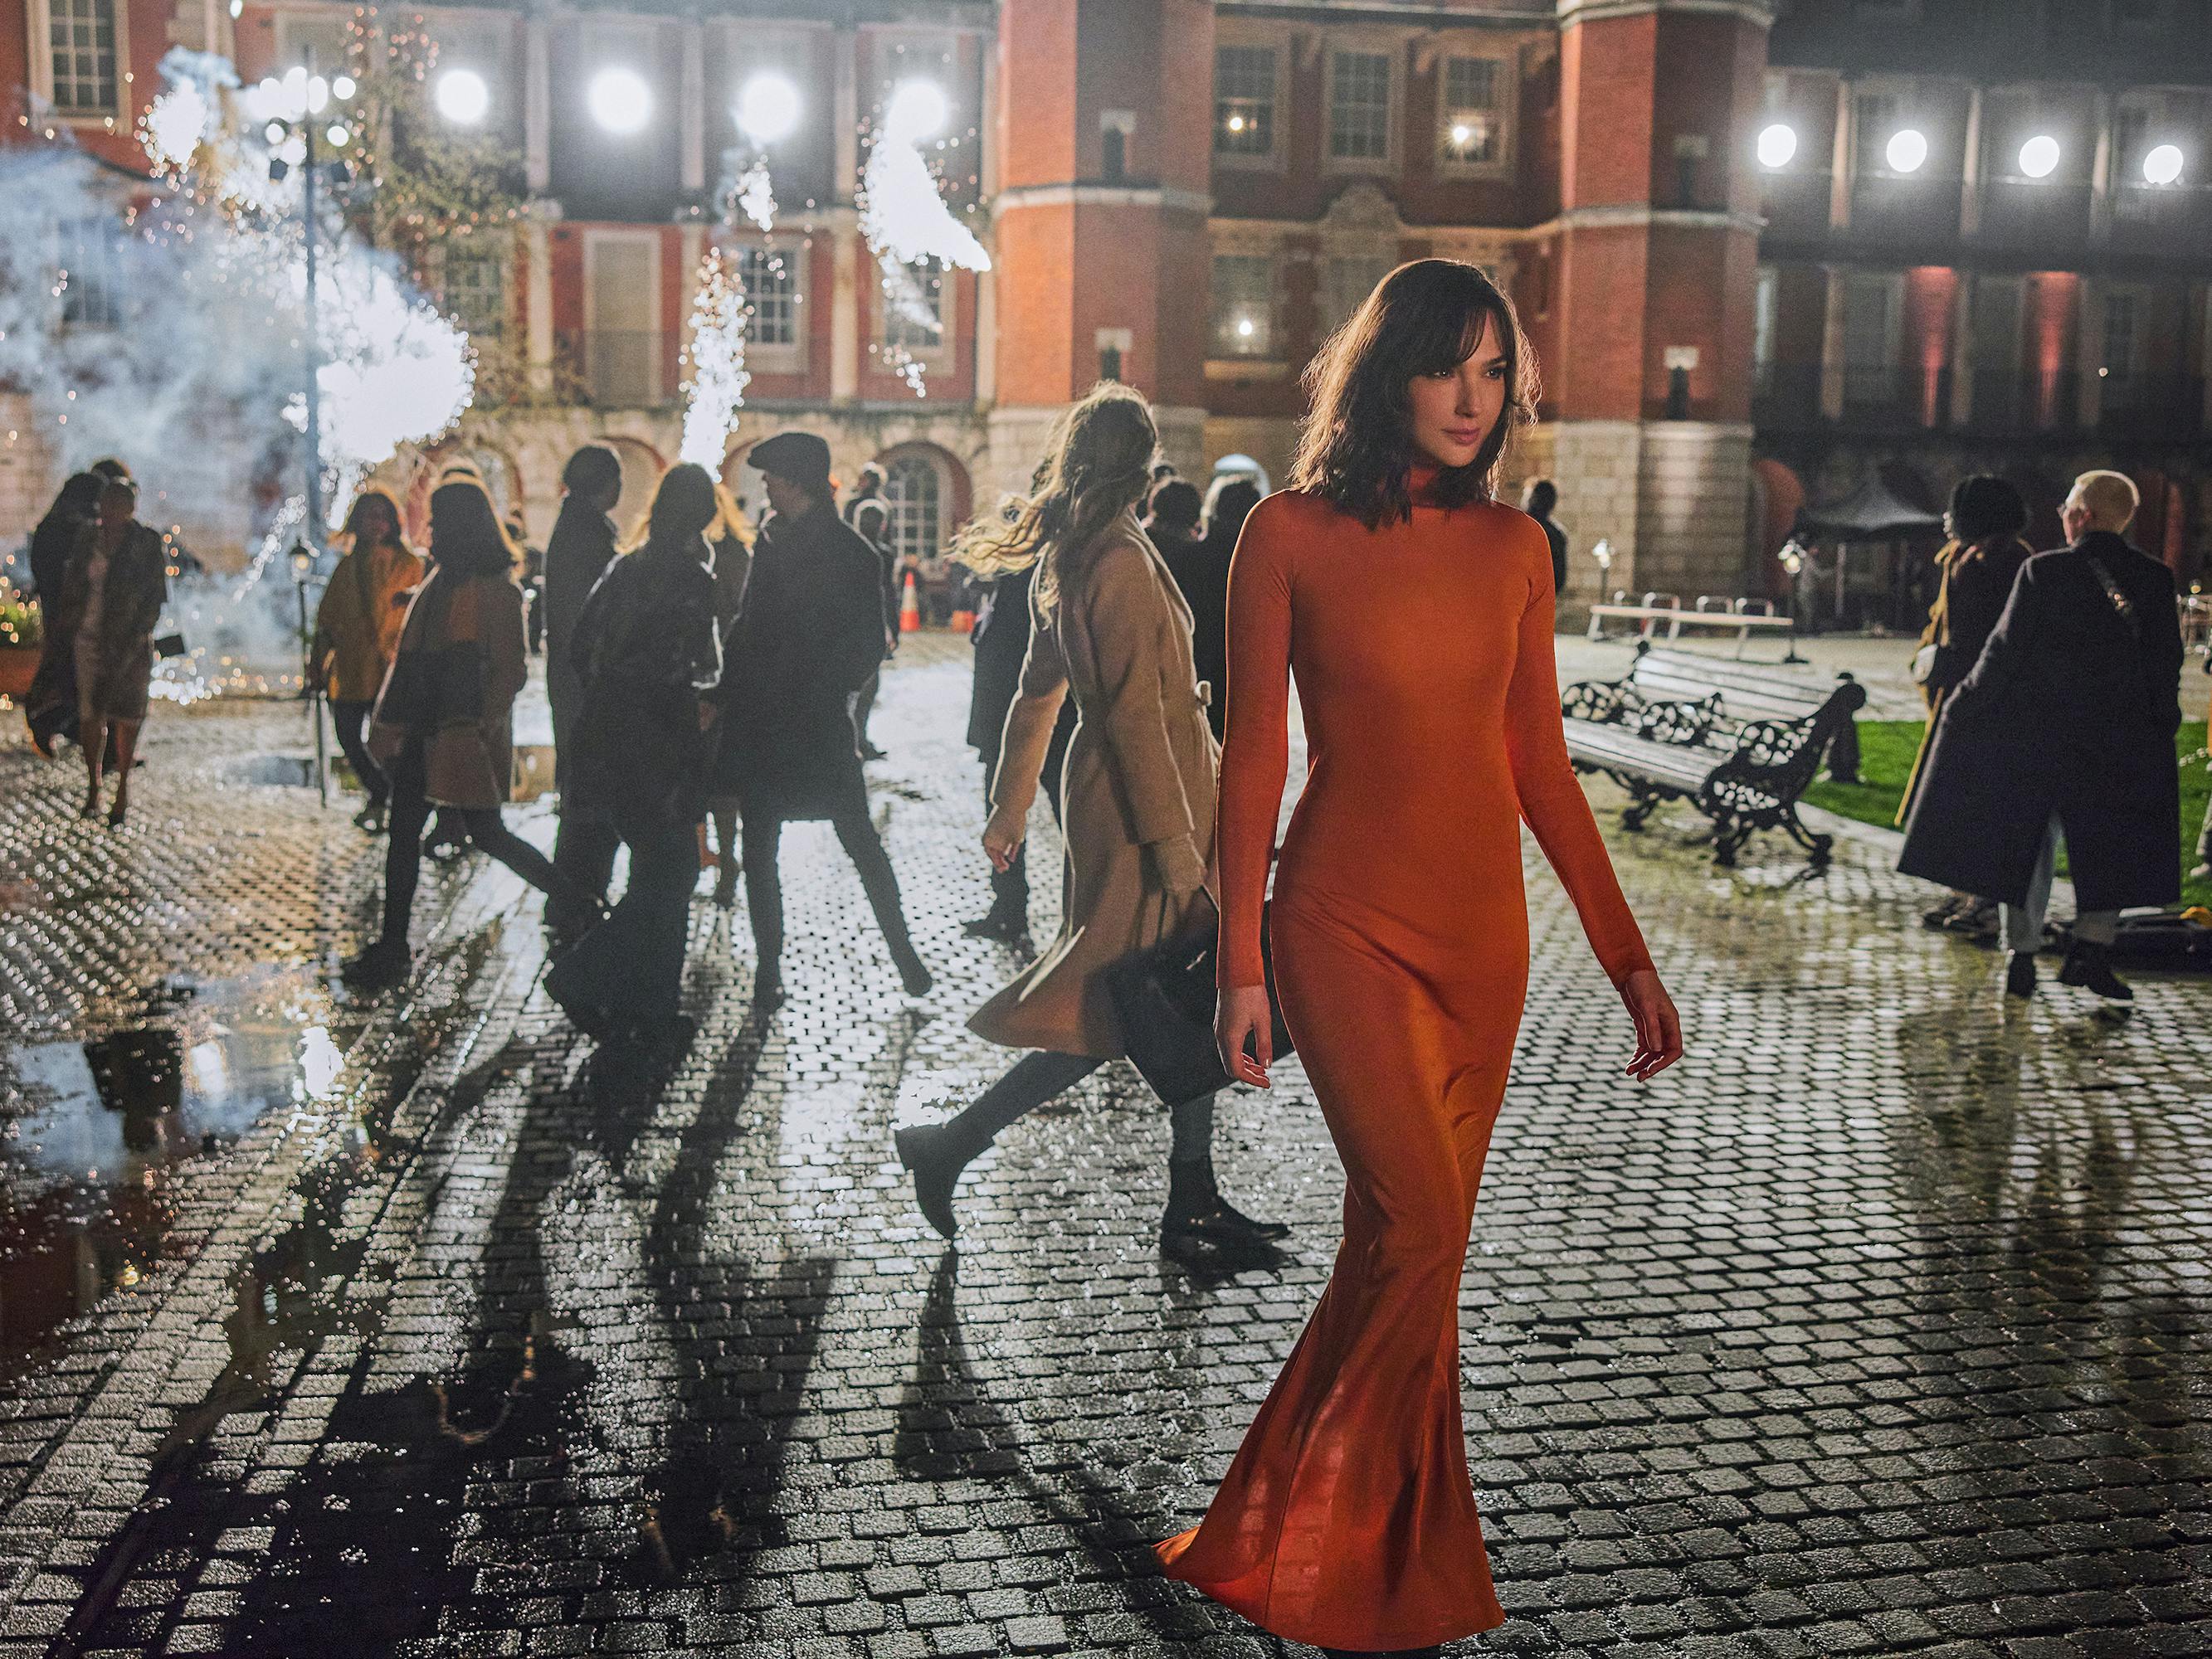 Gal Gadot wears an orange long-sleeved dress and walks through a dark, cobble-stoned street.